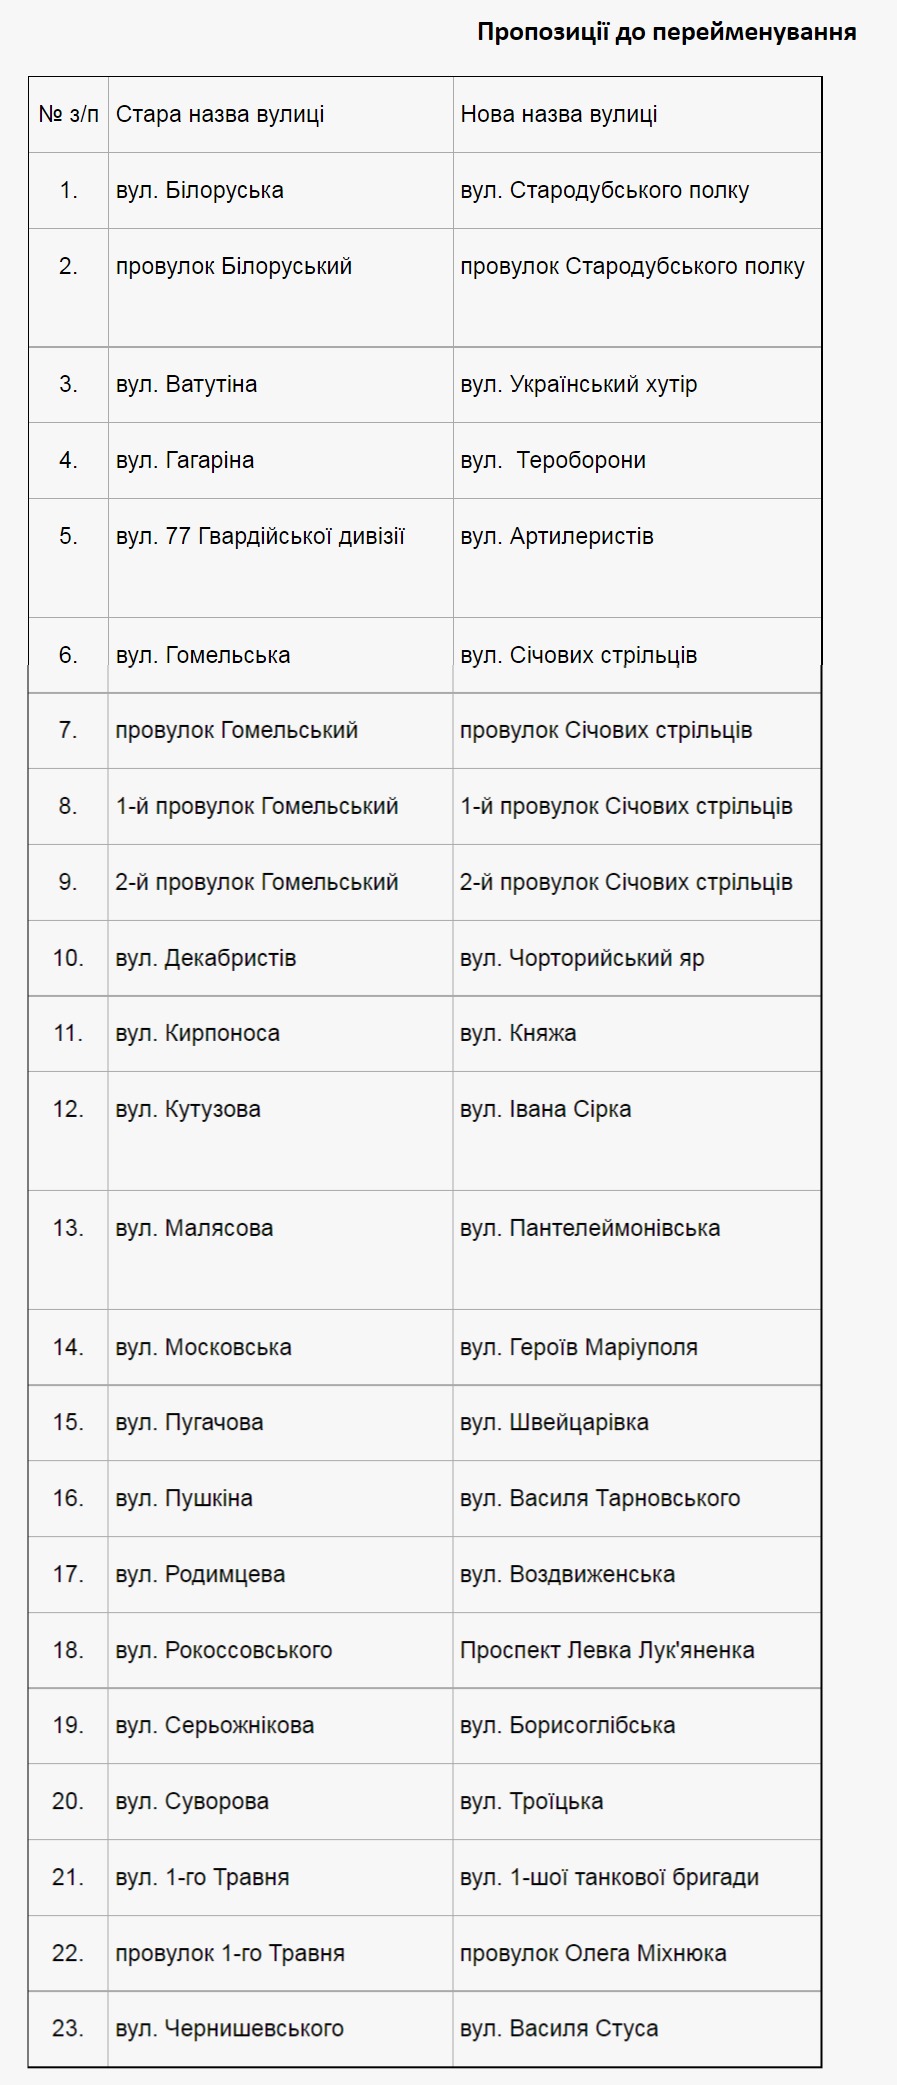 Список улиц Чернигова на переименование